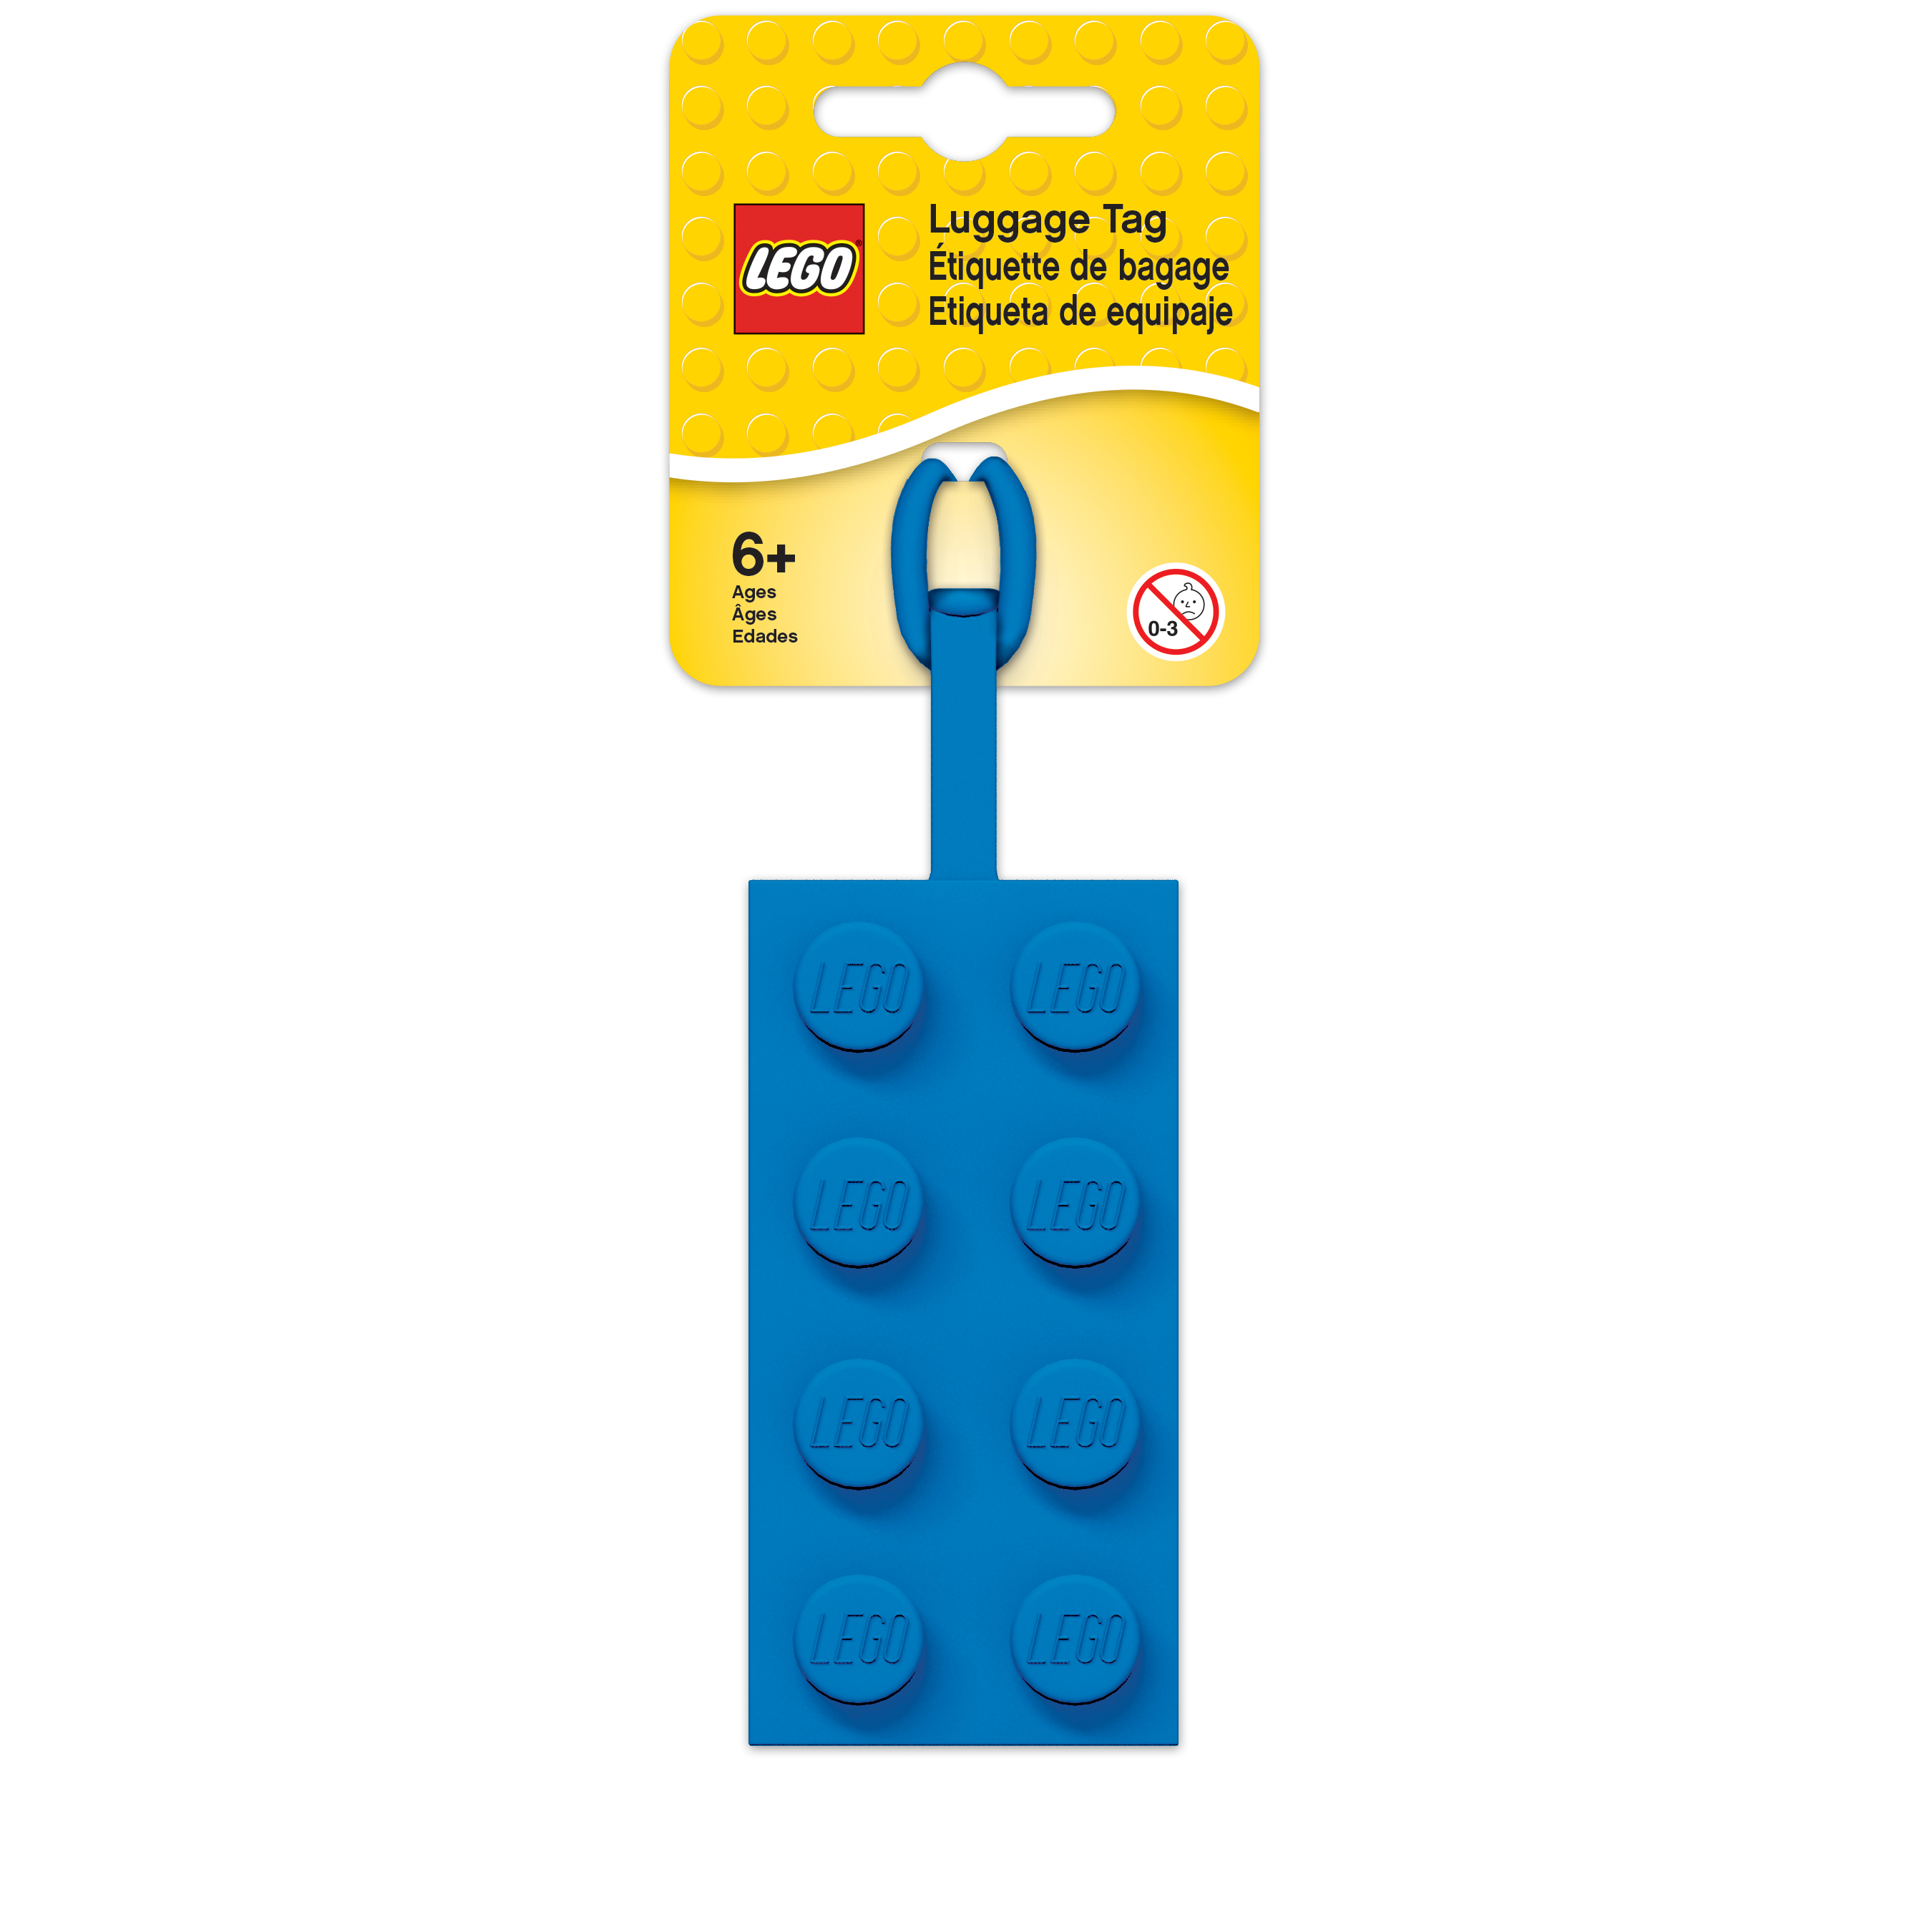 LEGO ป้ายติดกระเป๋าเลโก้สีน้ำเงิน Brick Blue 2x4